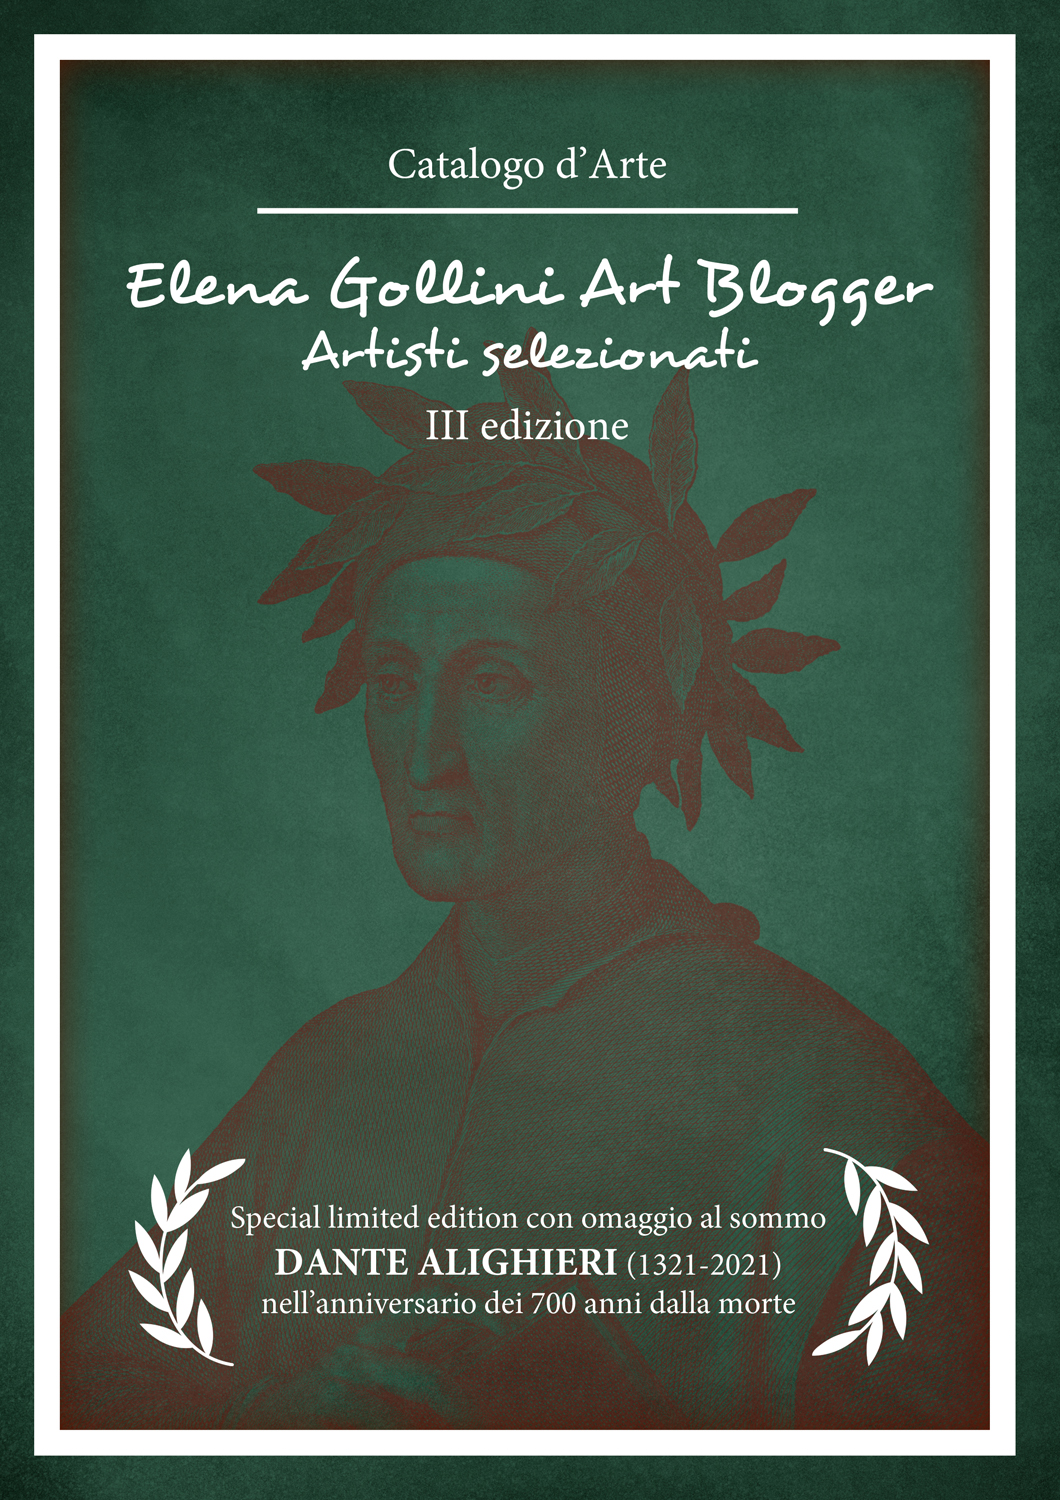 Pubblicato online il catalogo artisti special limited edition curato da Elena Gollini con omaggio a Dante Alighieri